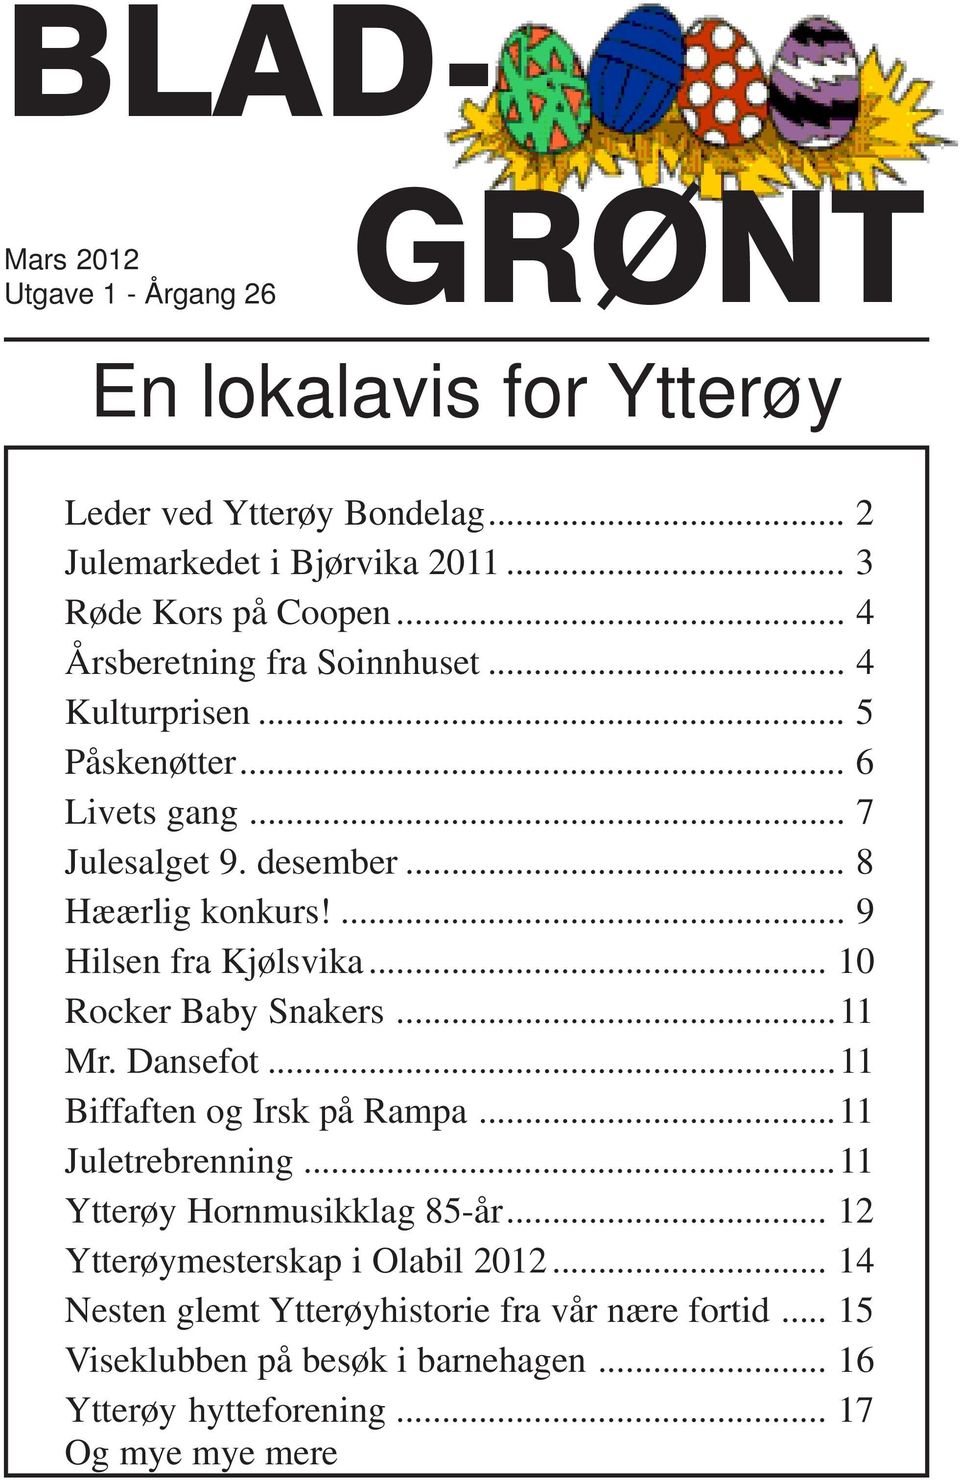 ... 9 Hilsen fra Kjølsvika... 10 Rocker Baby Snakers...11 Mr. Dansefot...11 Biffaften og Irsk på Rampa...11 Juletrebrenning...11 Ytterøy Hornmusikklag 85-år.